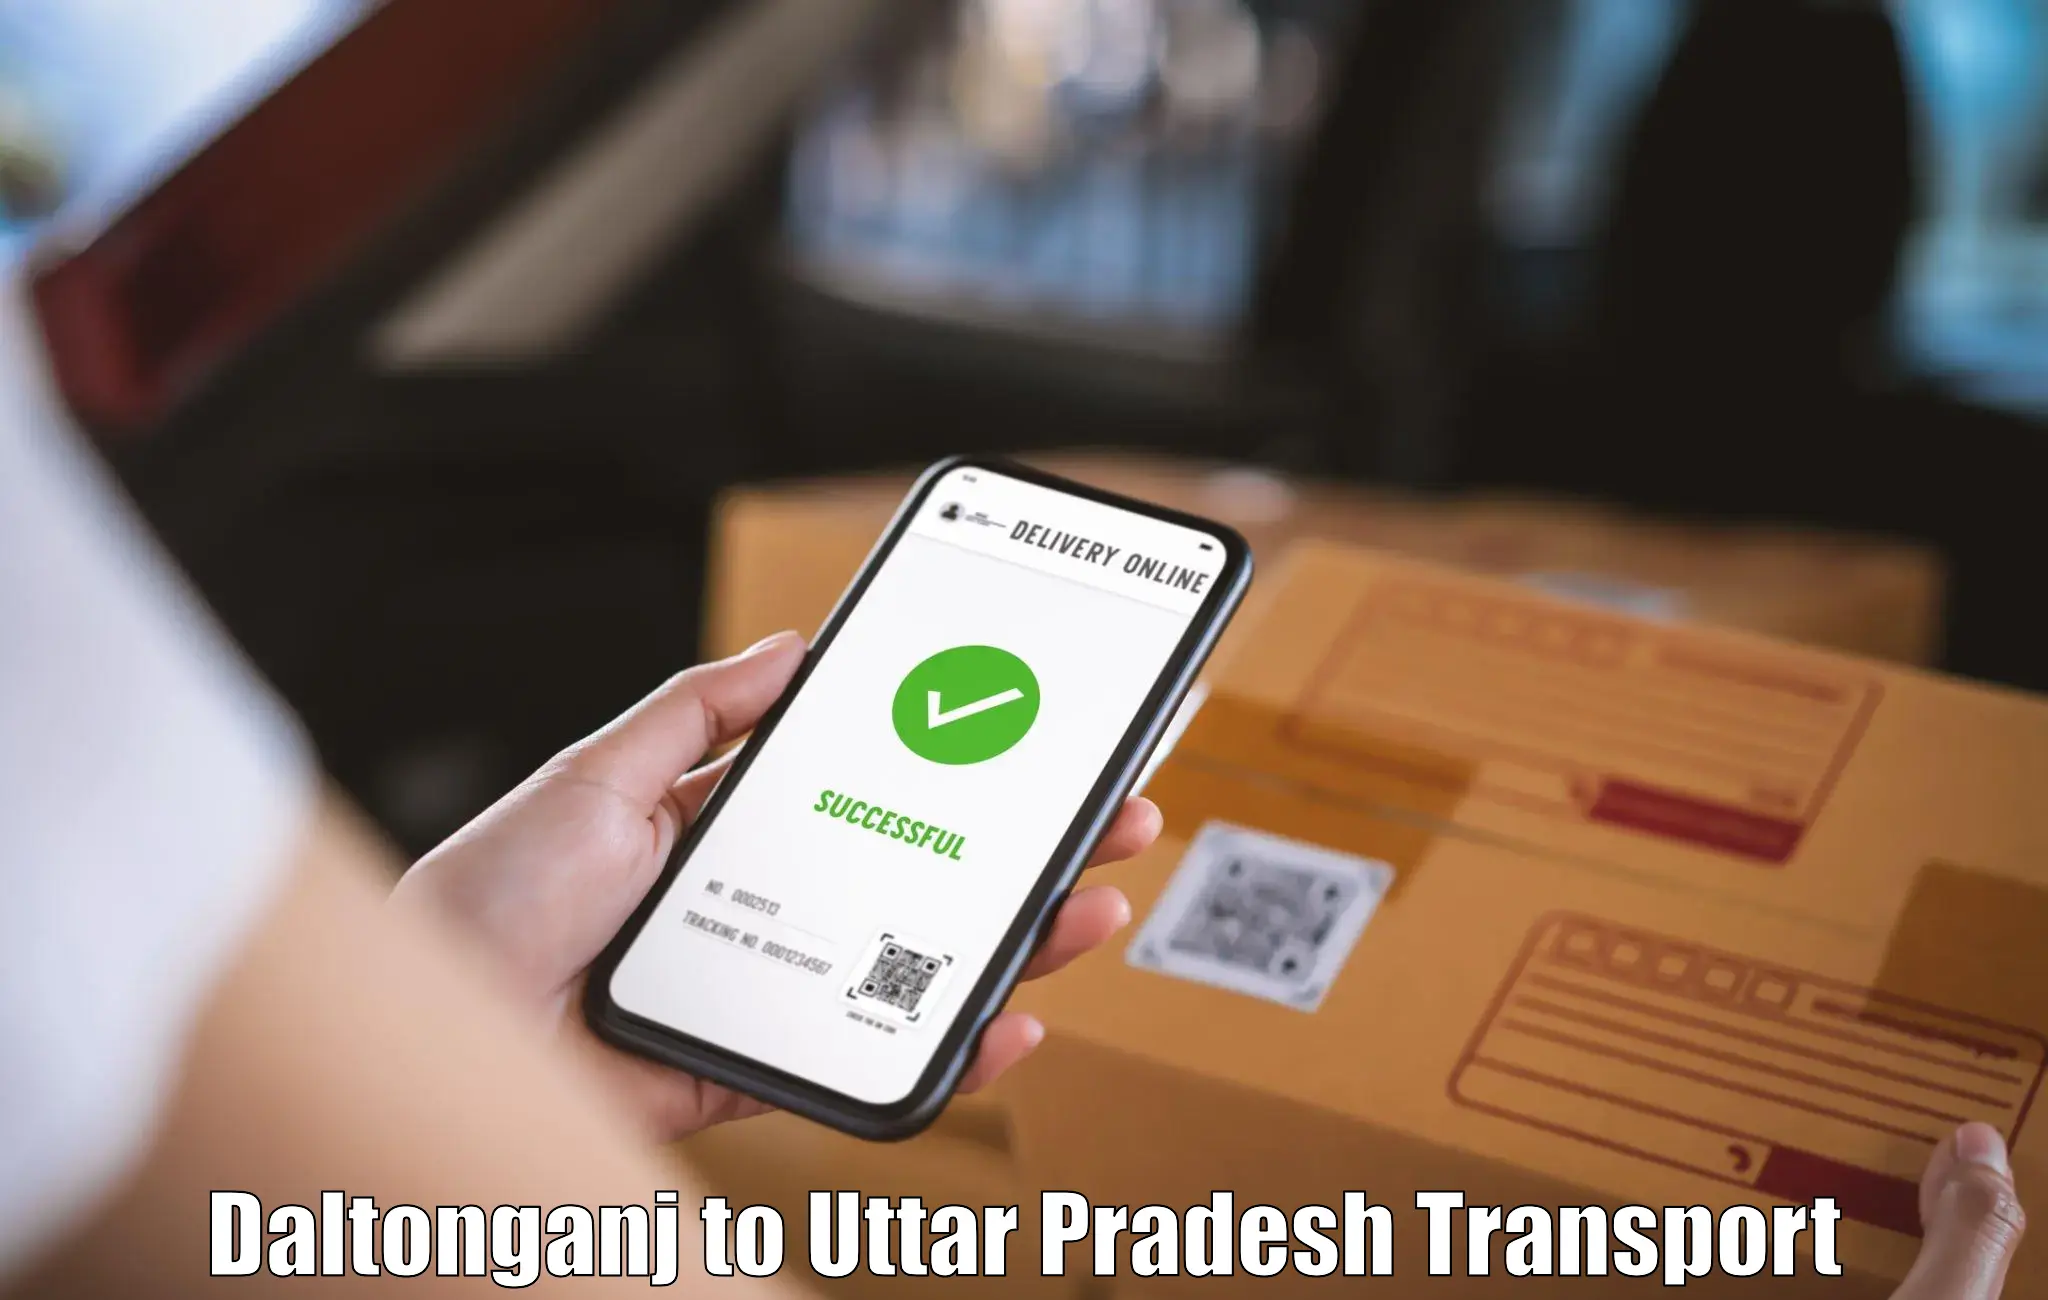 Online transport booking Daltonganj to Afzalgarh